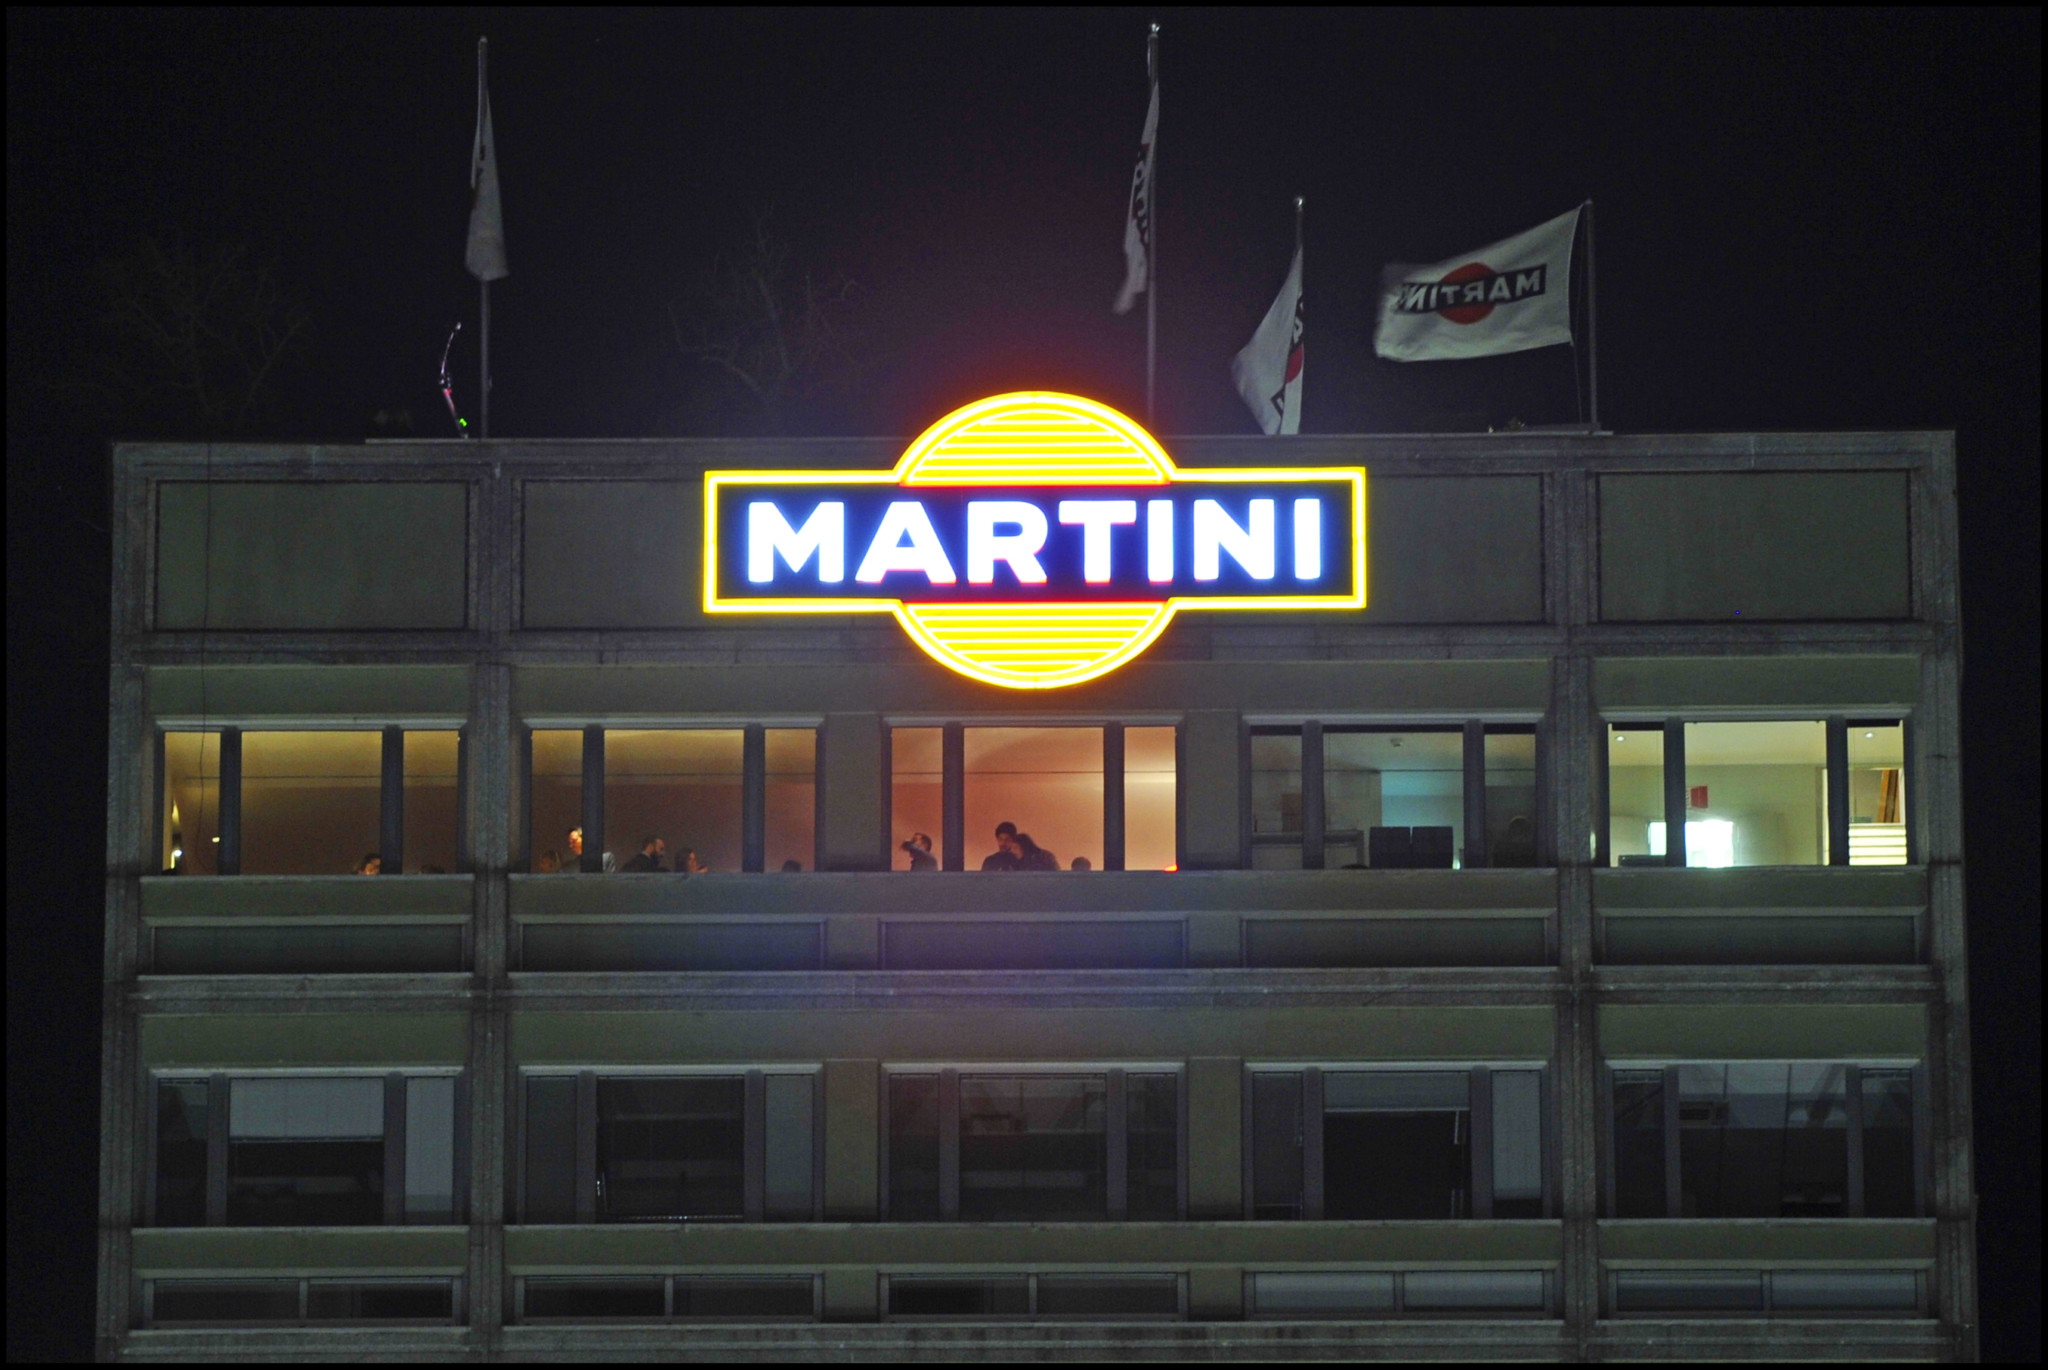 L’insegna Martini illumina ancora Milano